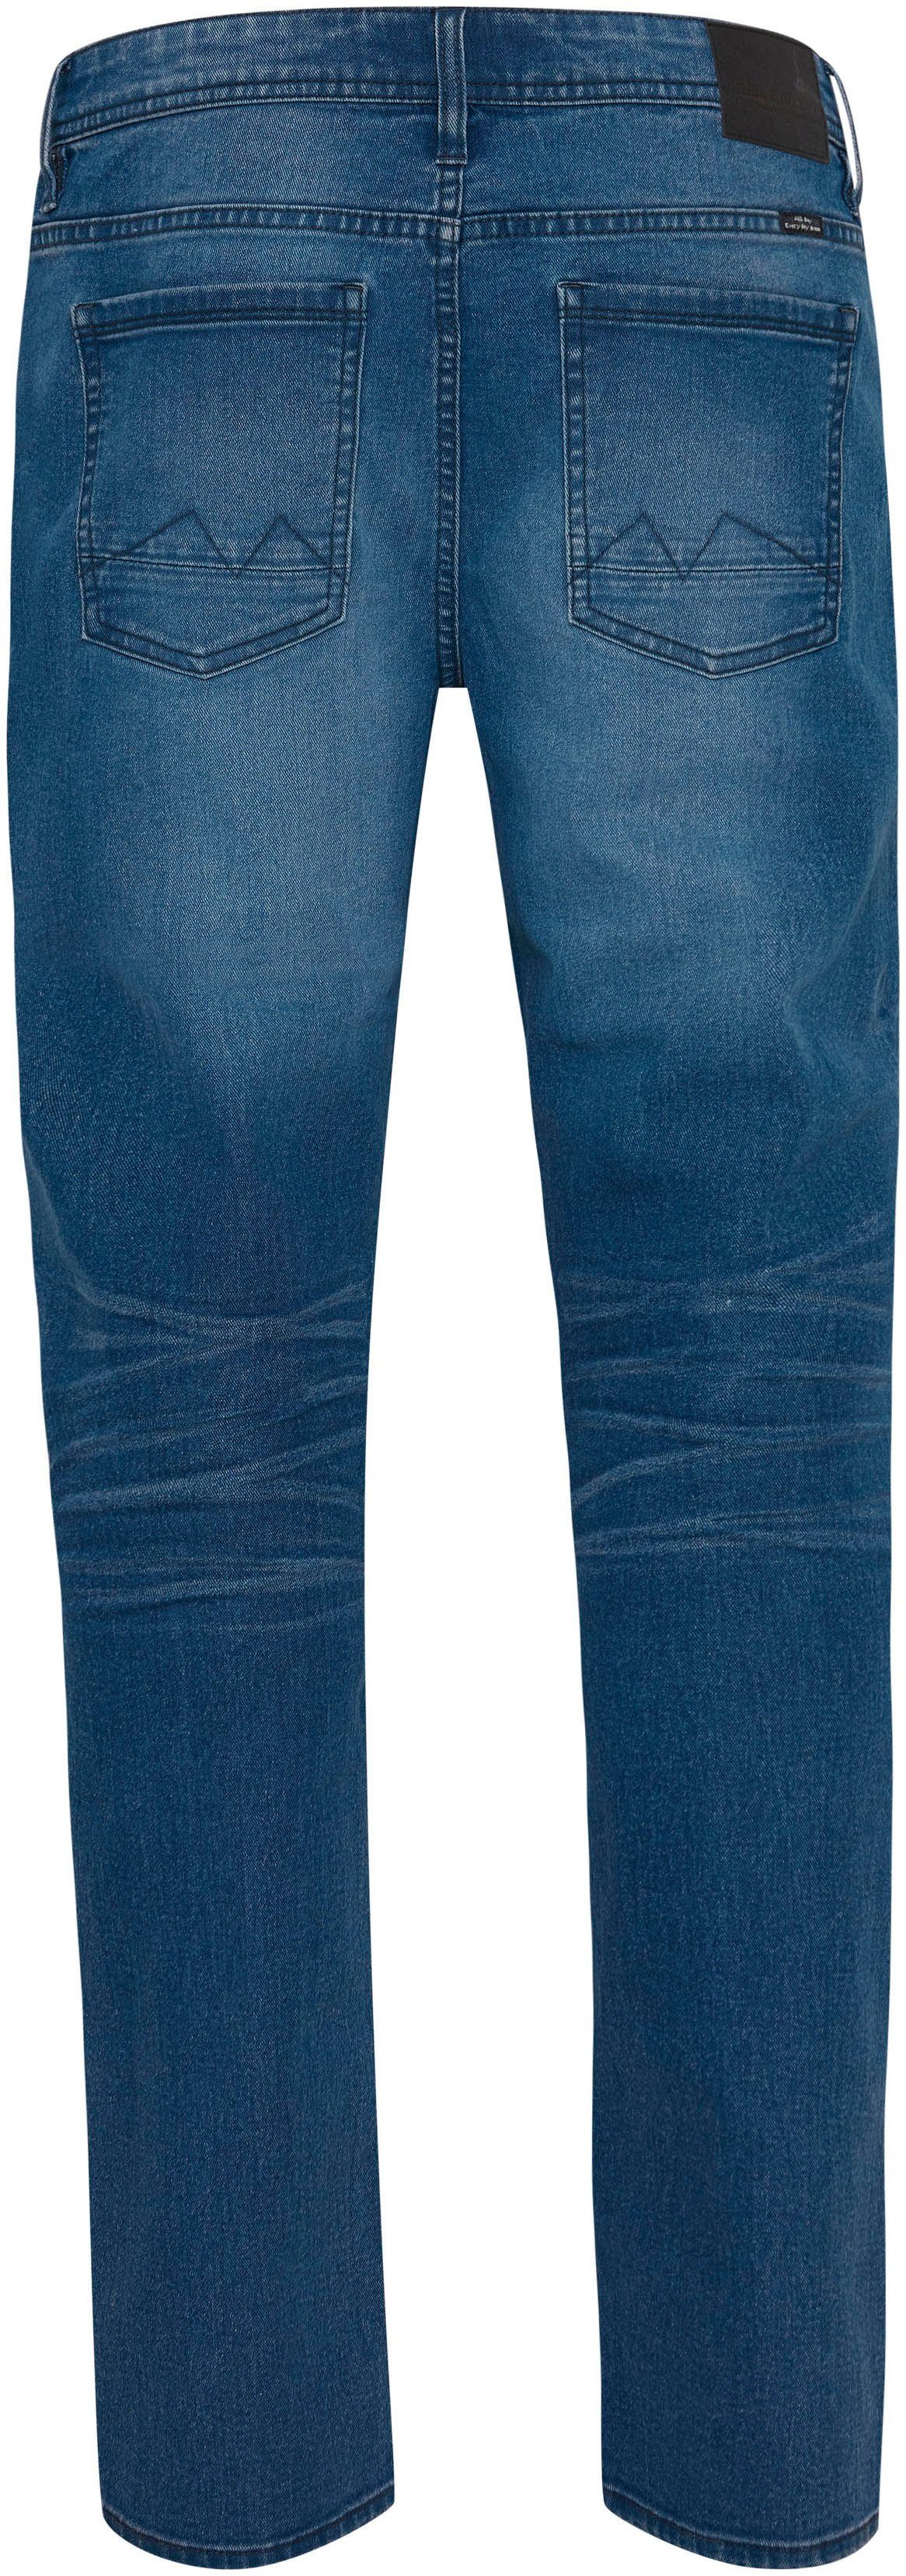 fit BL-Jeans Blend 5-Pocket-Jeans blue Twister medium